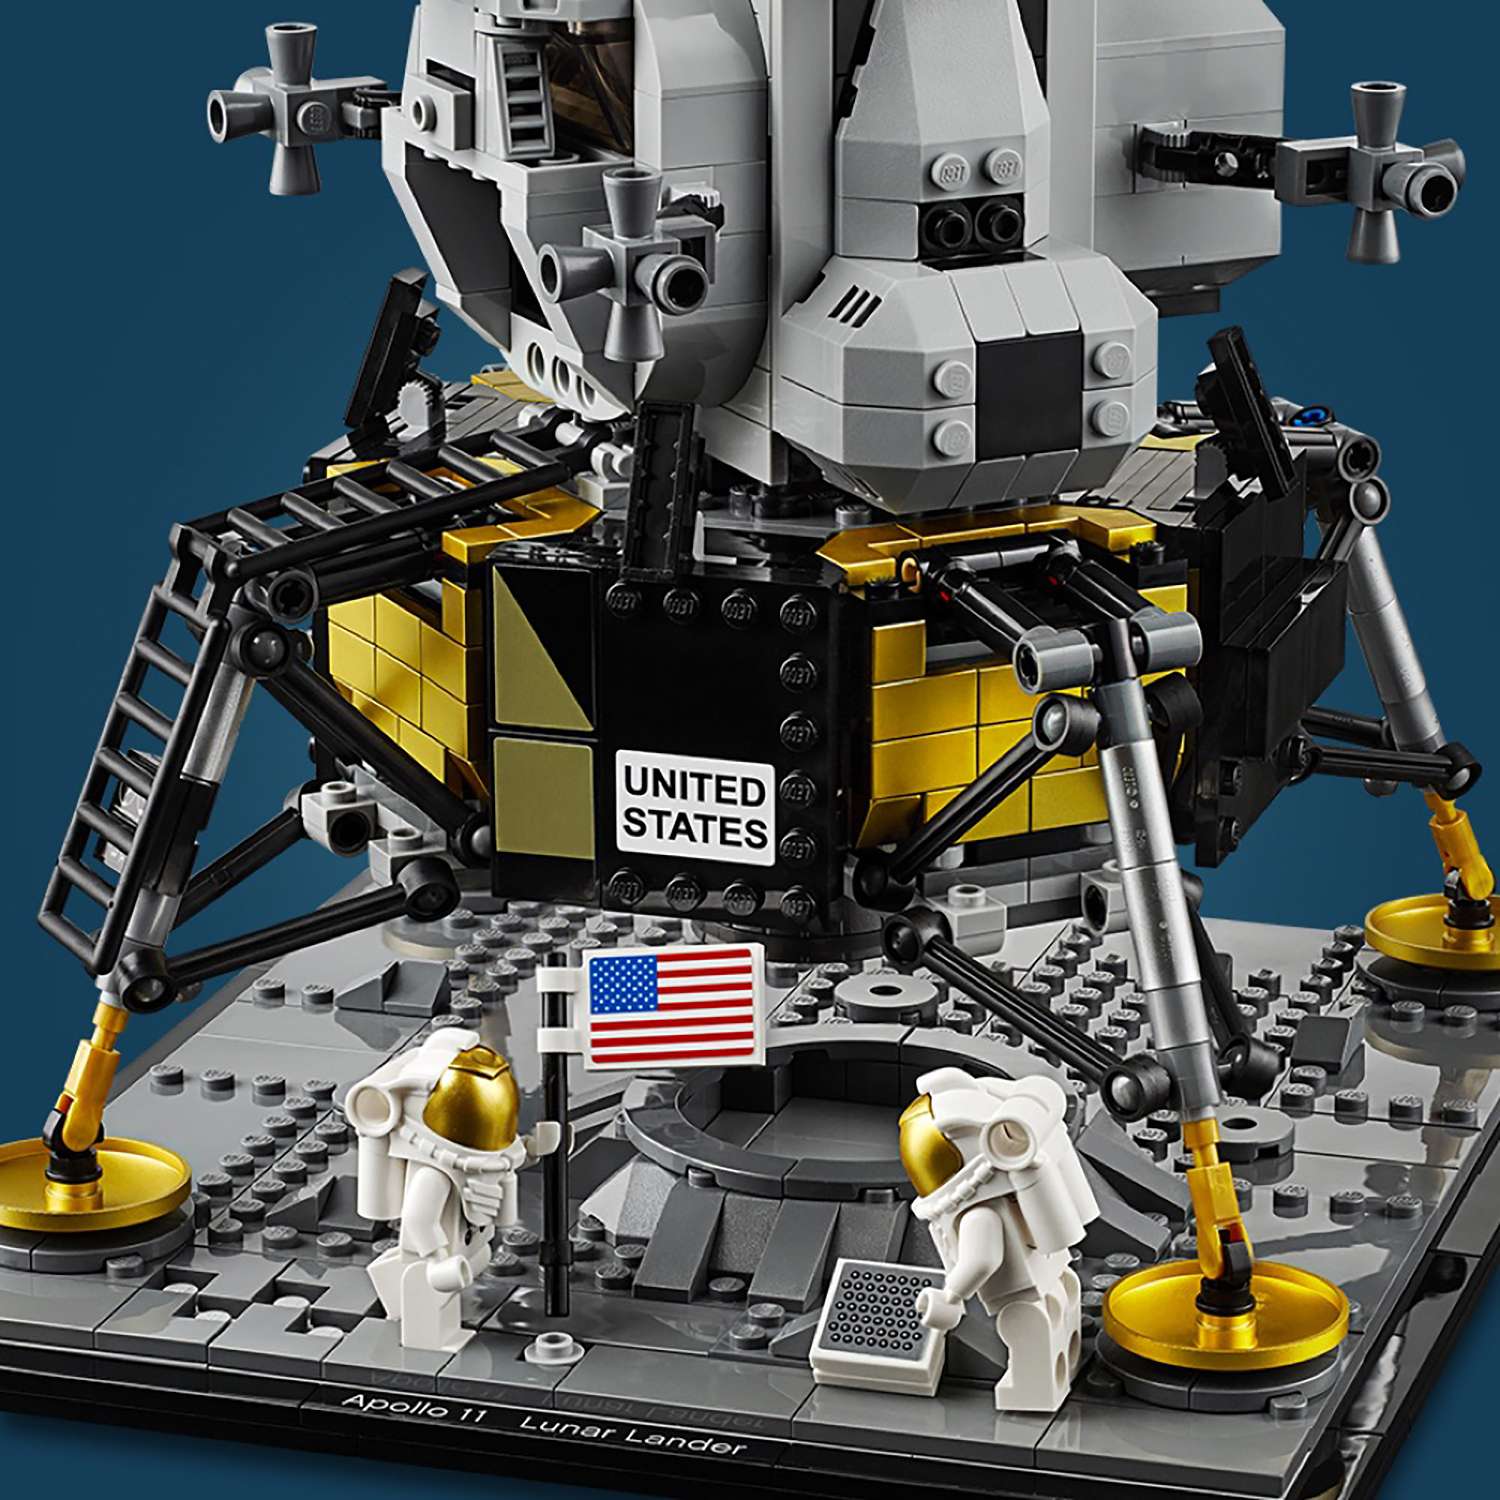 Конструктор LEGO Creator Expert Лунный модуль корабля Апполон 11 НАСА 10266 - фото 12